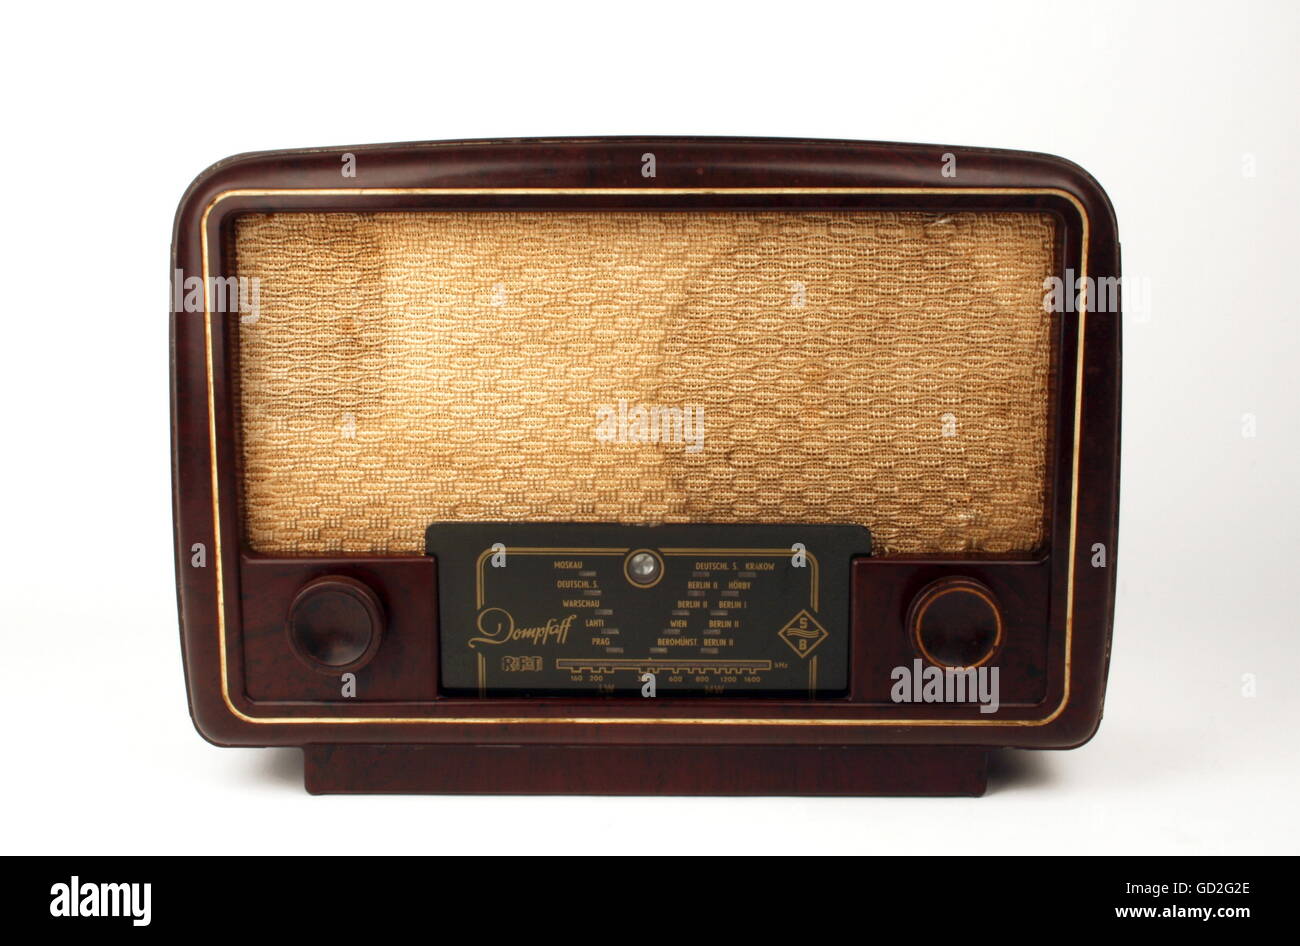 Broadcast, radio, home-récepteur MW/LW 'Dombfaff', design: Design par usine, fabriqué par: VEB Stern-radio Berlin, Allemagne de l'est, 1953, droits additionnels-Clearences-non disponible Banque D'Images